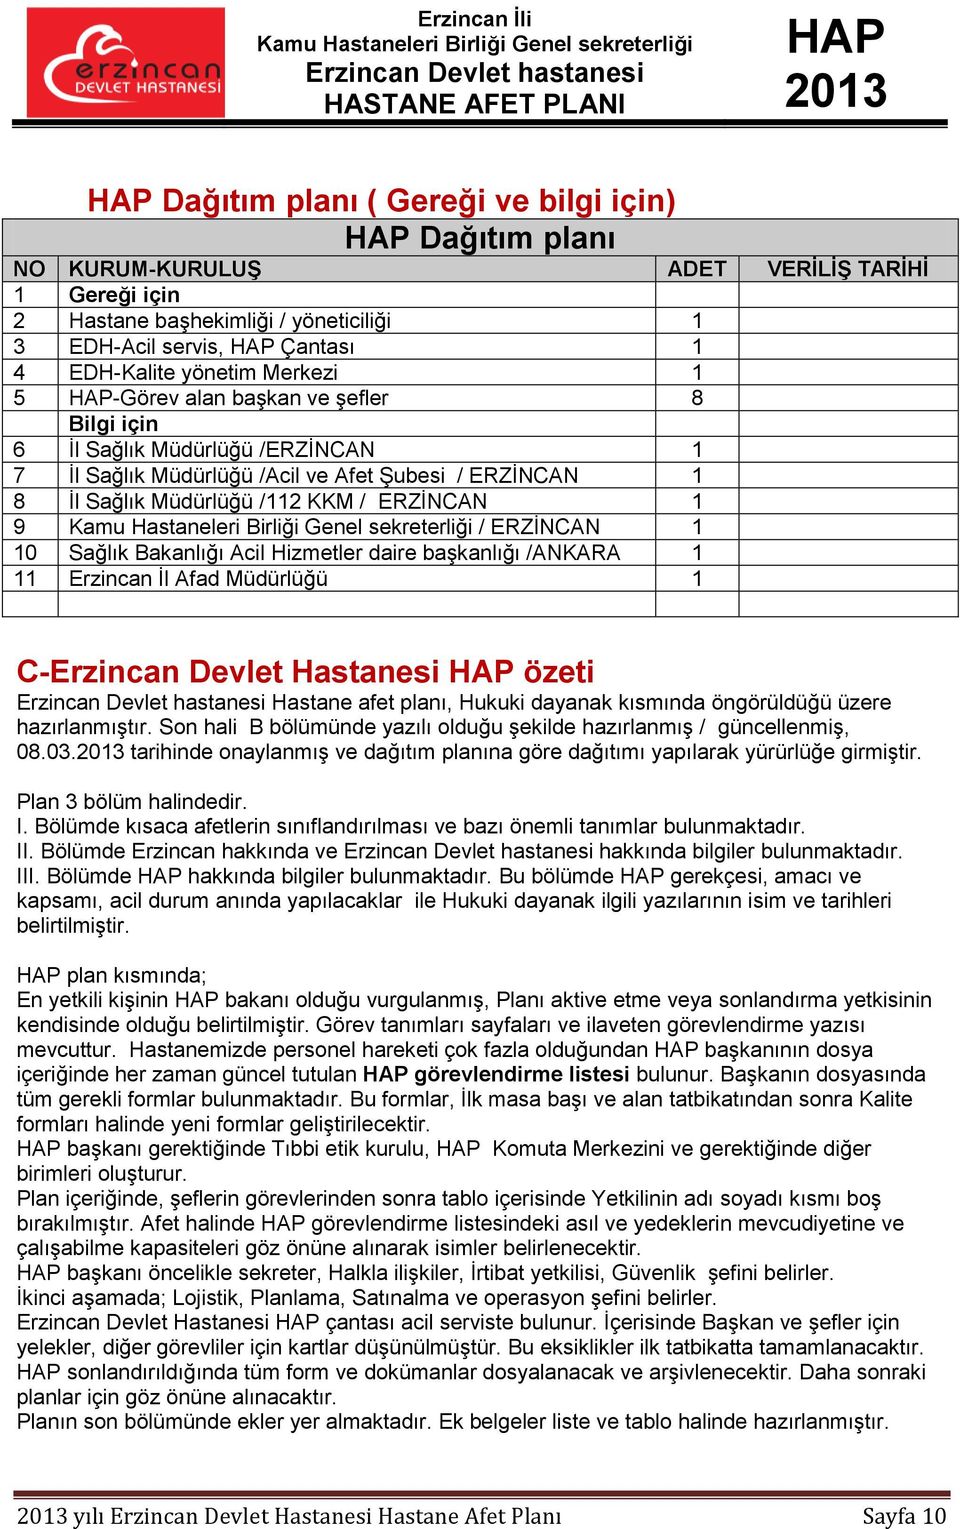 ERZİNCAN 1 10 Sağlık Bakanlığı Acil Hizmetler daire başkanlığı /ANKARA 1 11 Erzincan İl Afad Müdürlüğü 1 C-Erzincan Devlet Hastanesi özeti Hastane afet planı, Hukuki dayanak kısmında öngörüldüğü